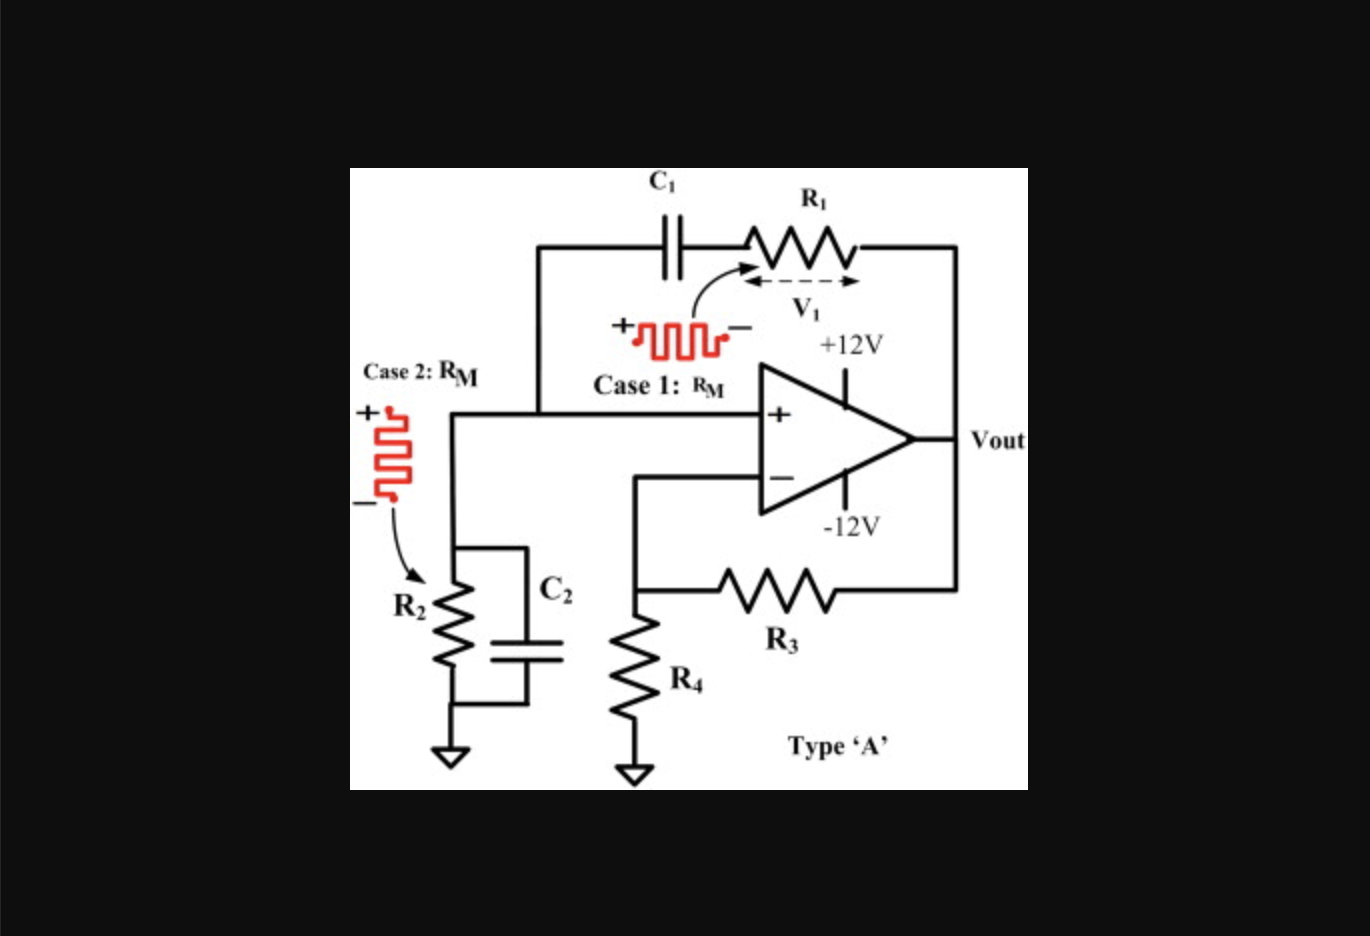 Generalized model for memristor-based Wien family oscillators